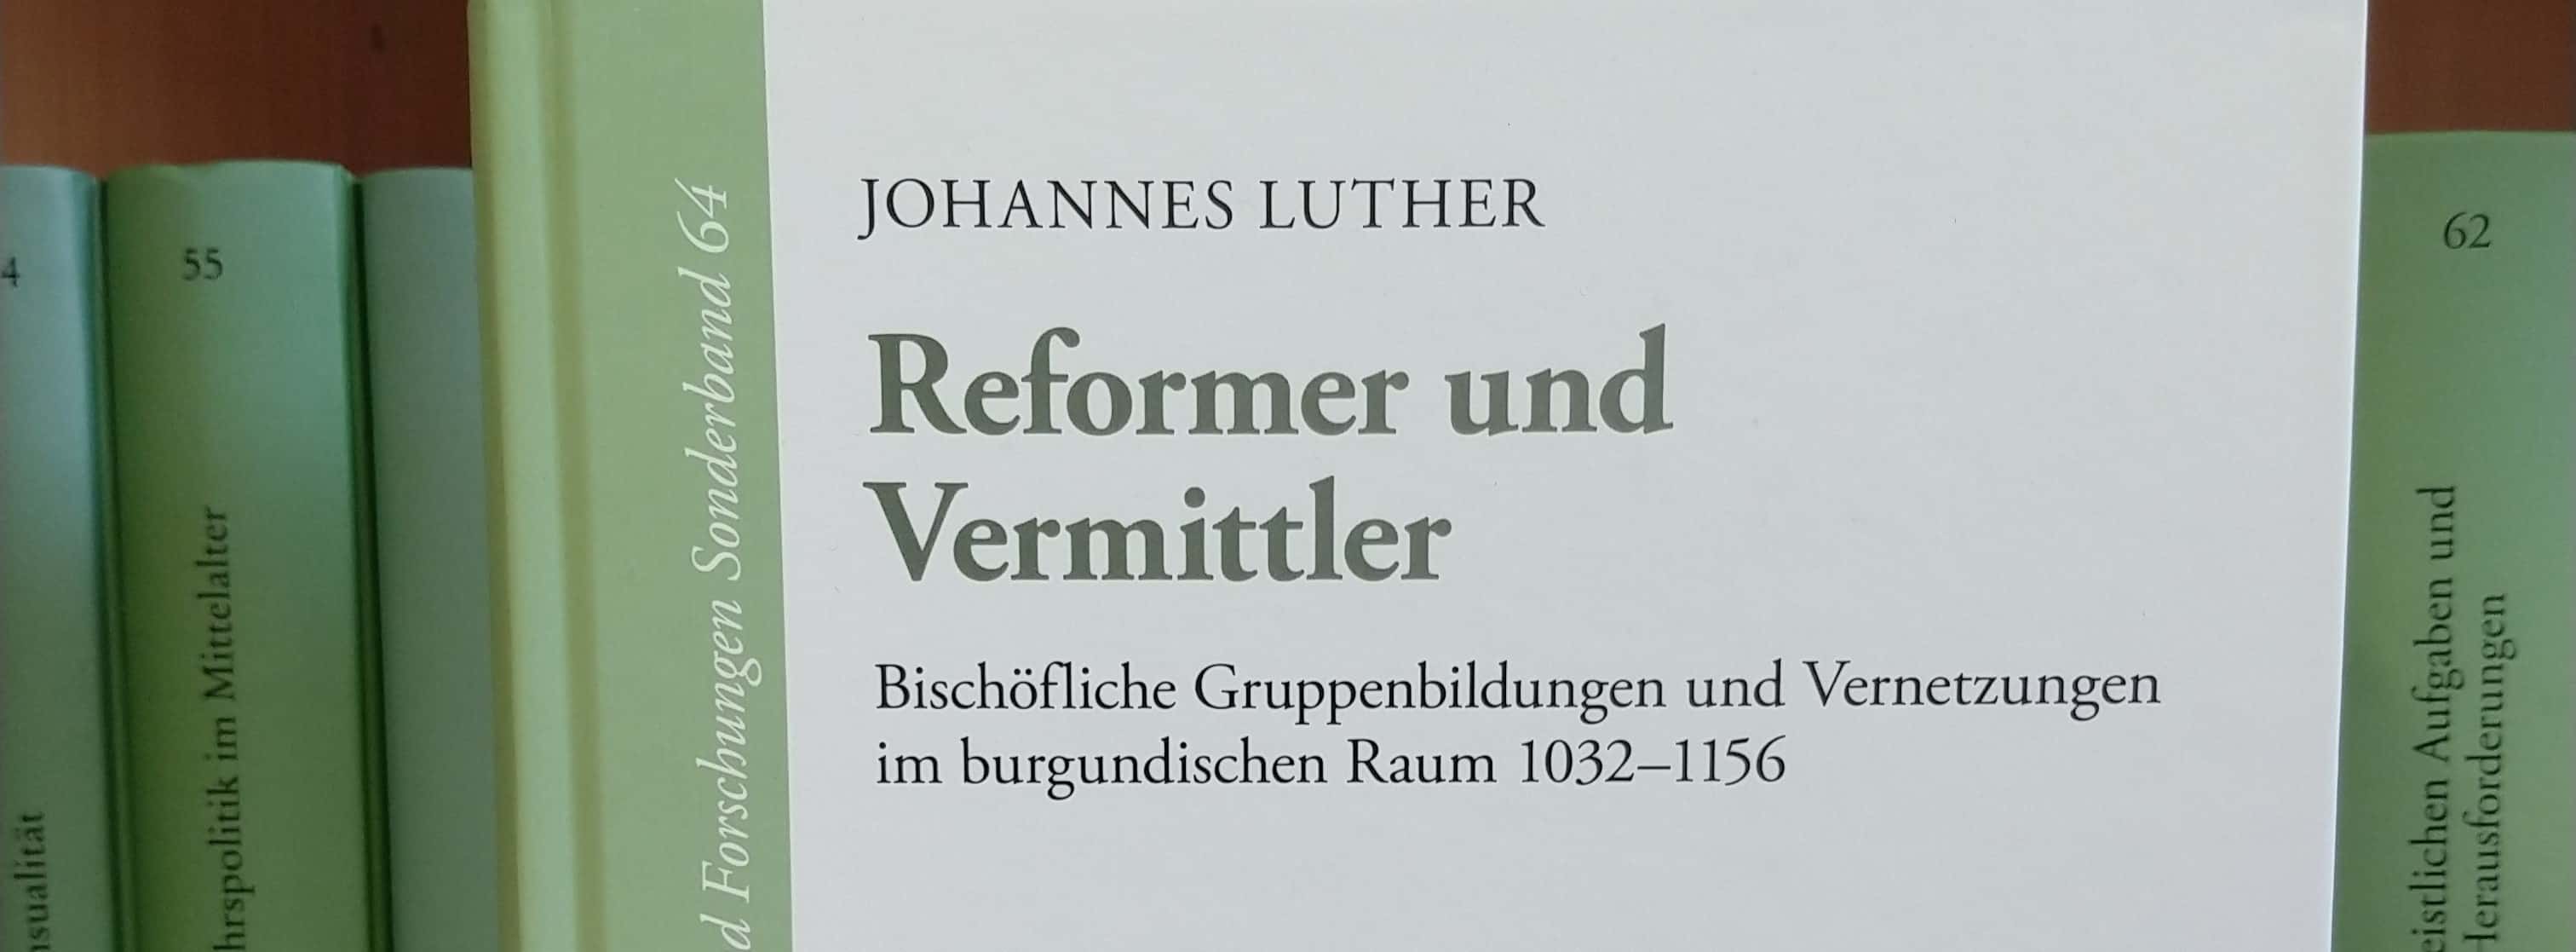 <p>Das Buch mit dem Titel »Reformer und Vermittler. Bischöfliche Gruppenbildungen und Vernetzungen im burgundischen Raum 1032-1156« wurde von Johannes Luther verfasst.</p>
